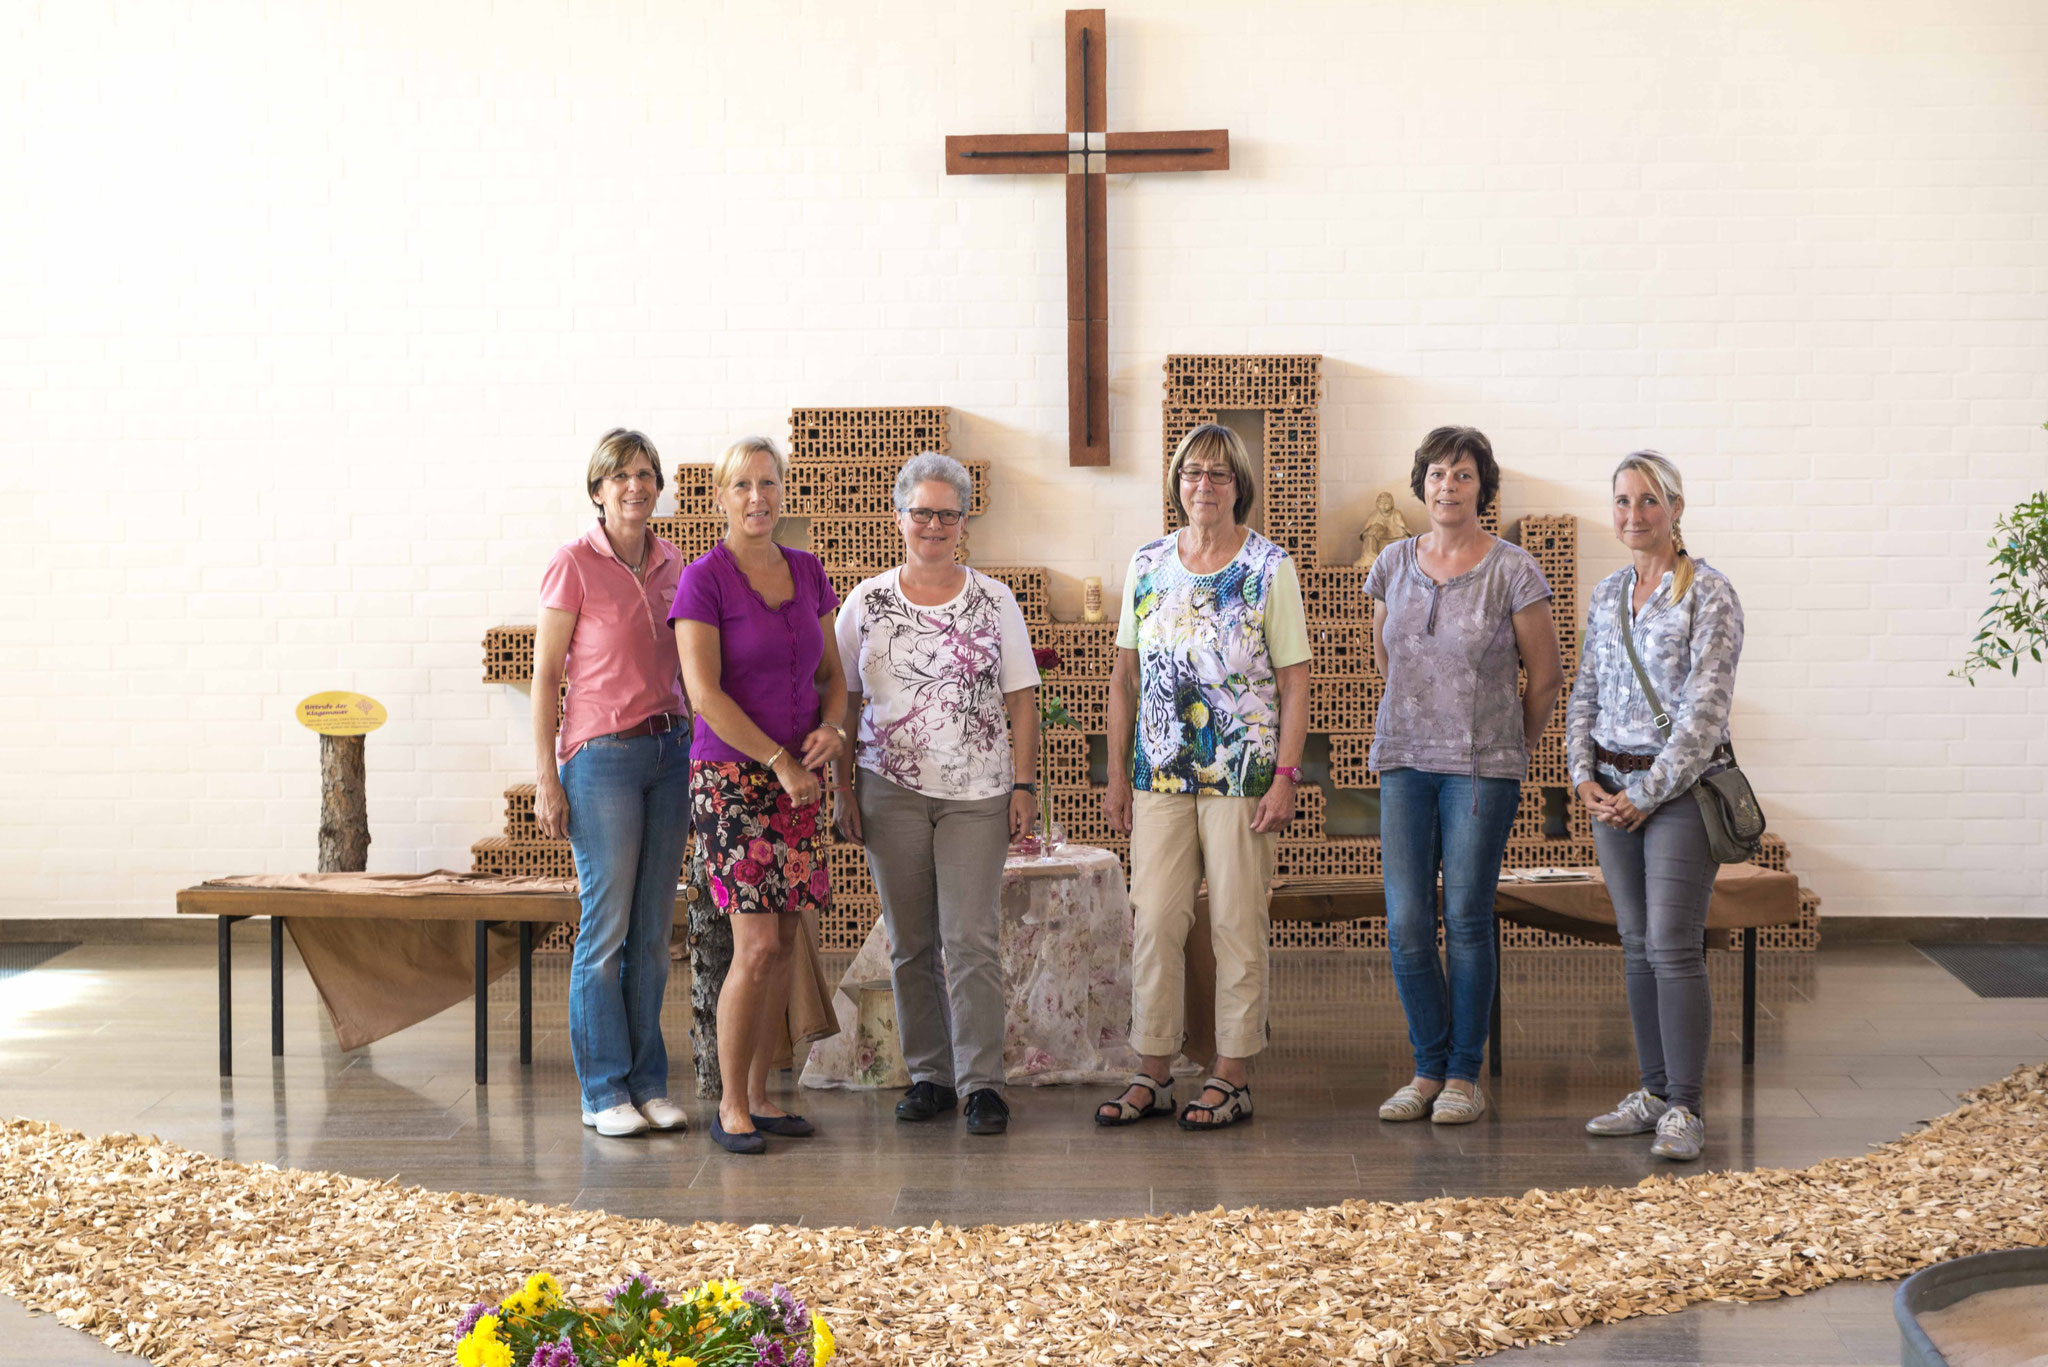 Pfarrerin Katrin Schröter (3.v.l.) mit Kirchenvorsteherinnen: Annette Rummel, Sabine Jäger, Else Kummer, Iris Figge und Tonja Hochmanski 